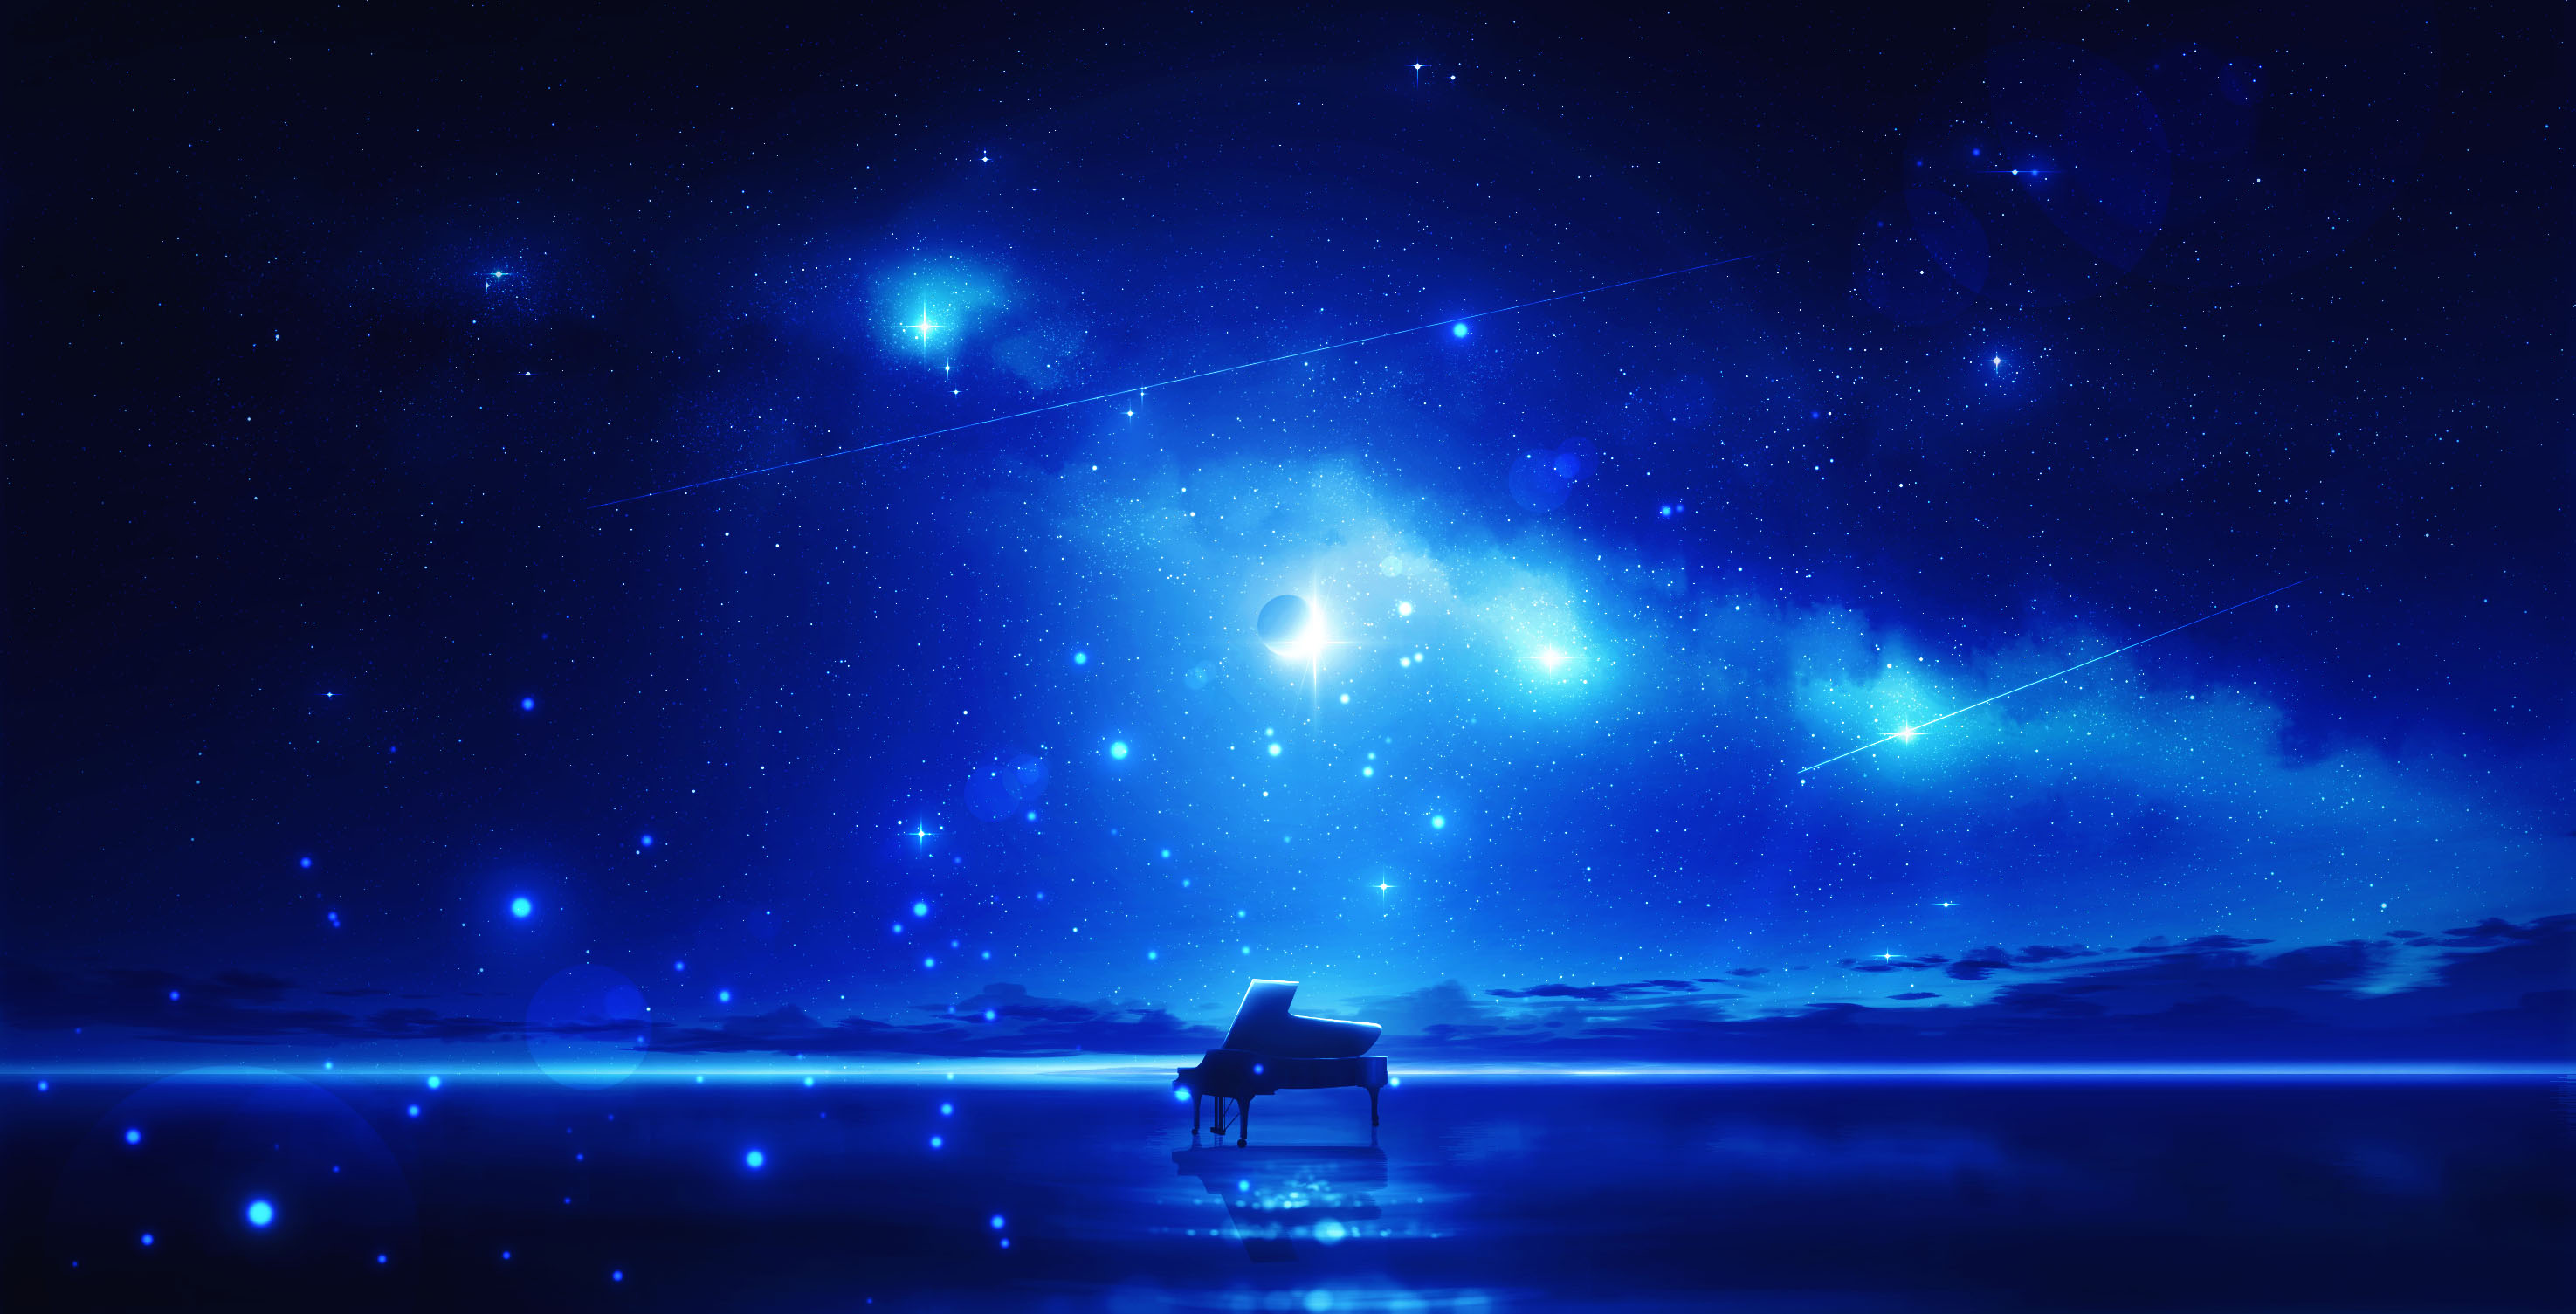 Космическая музыка веселая без слов. Ночное небо. Звездное небо. Фон ночь. Звездное небо арт.